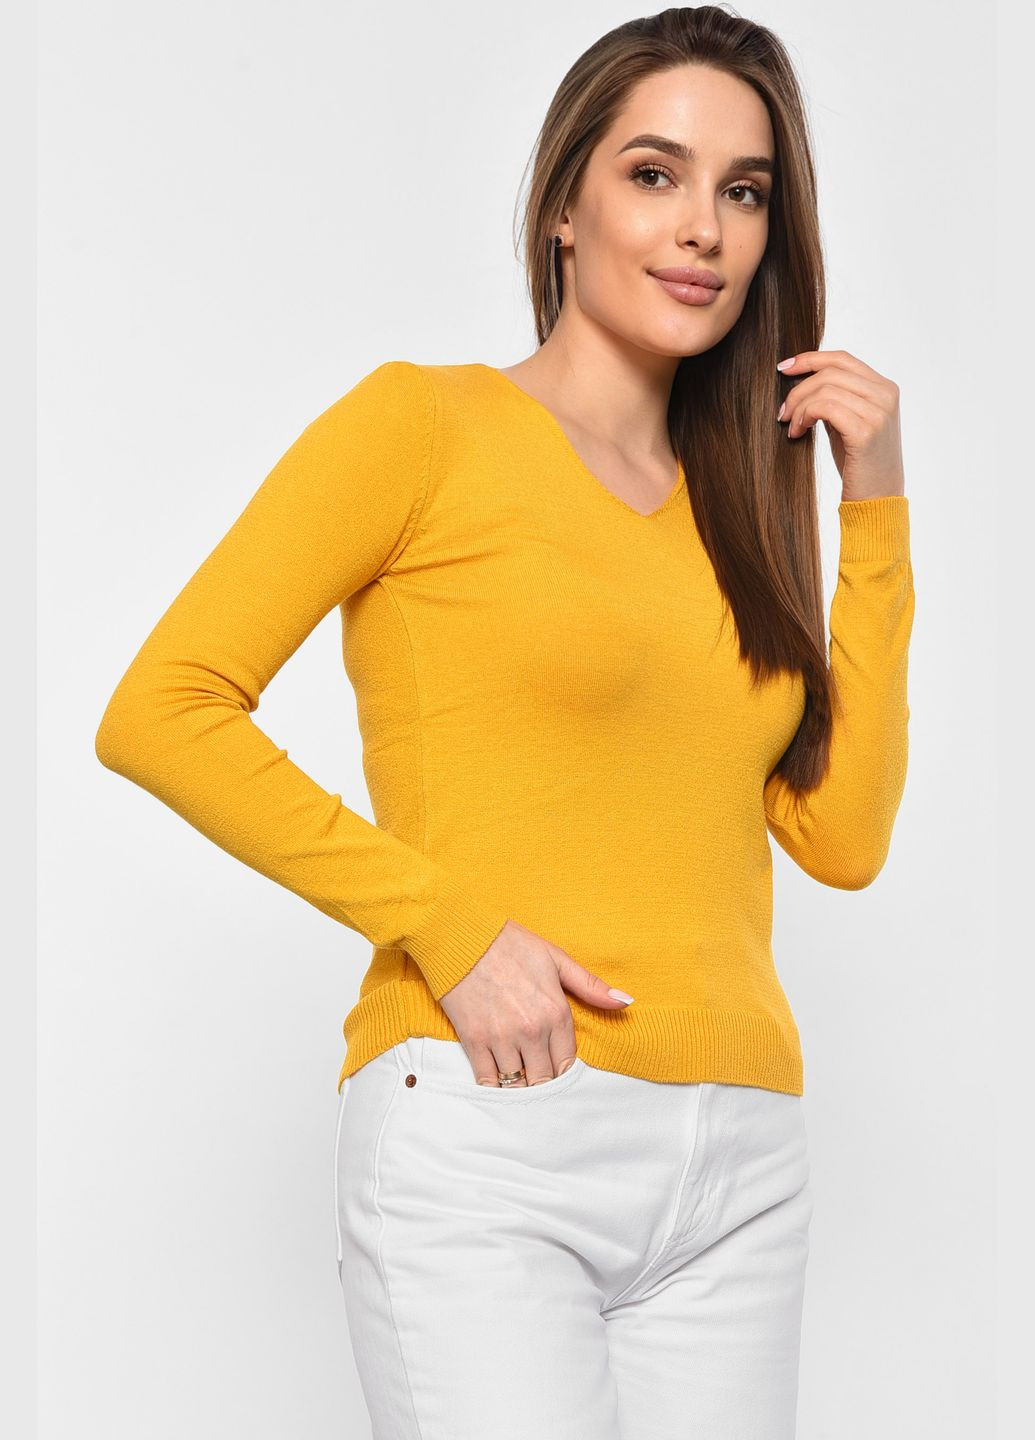 Горчичный демисезонный кофта женская горчичного цвета пуловер Let's Shop